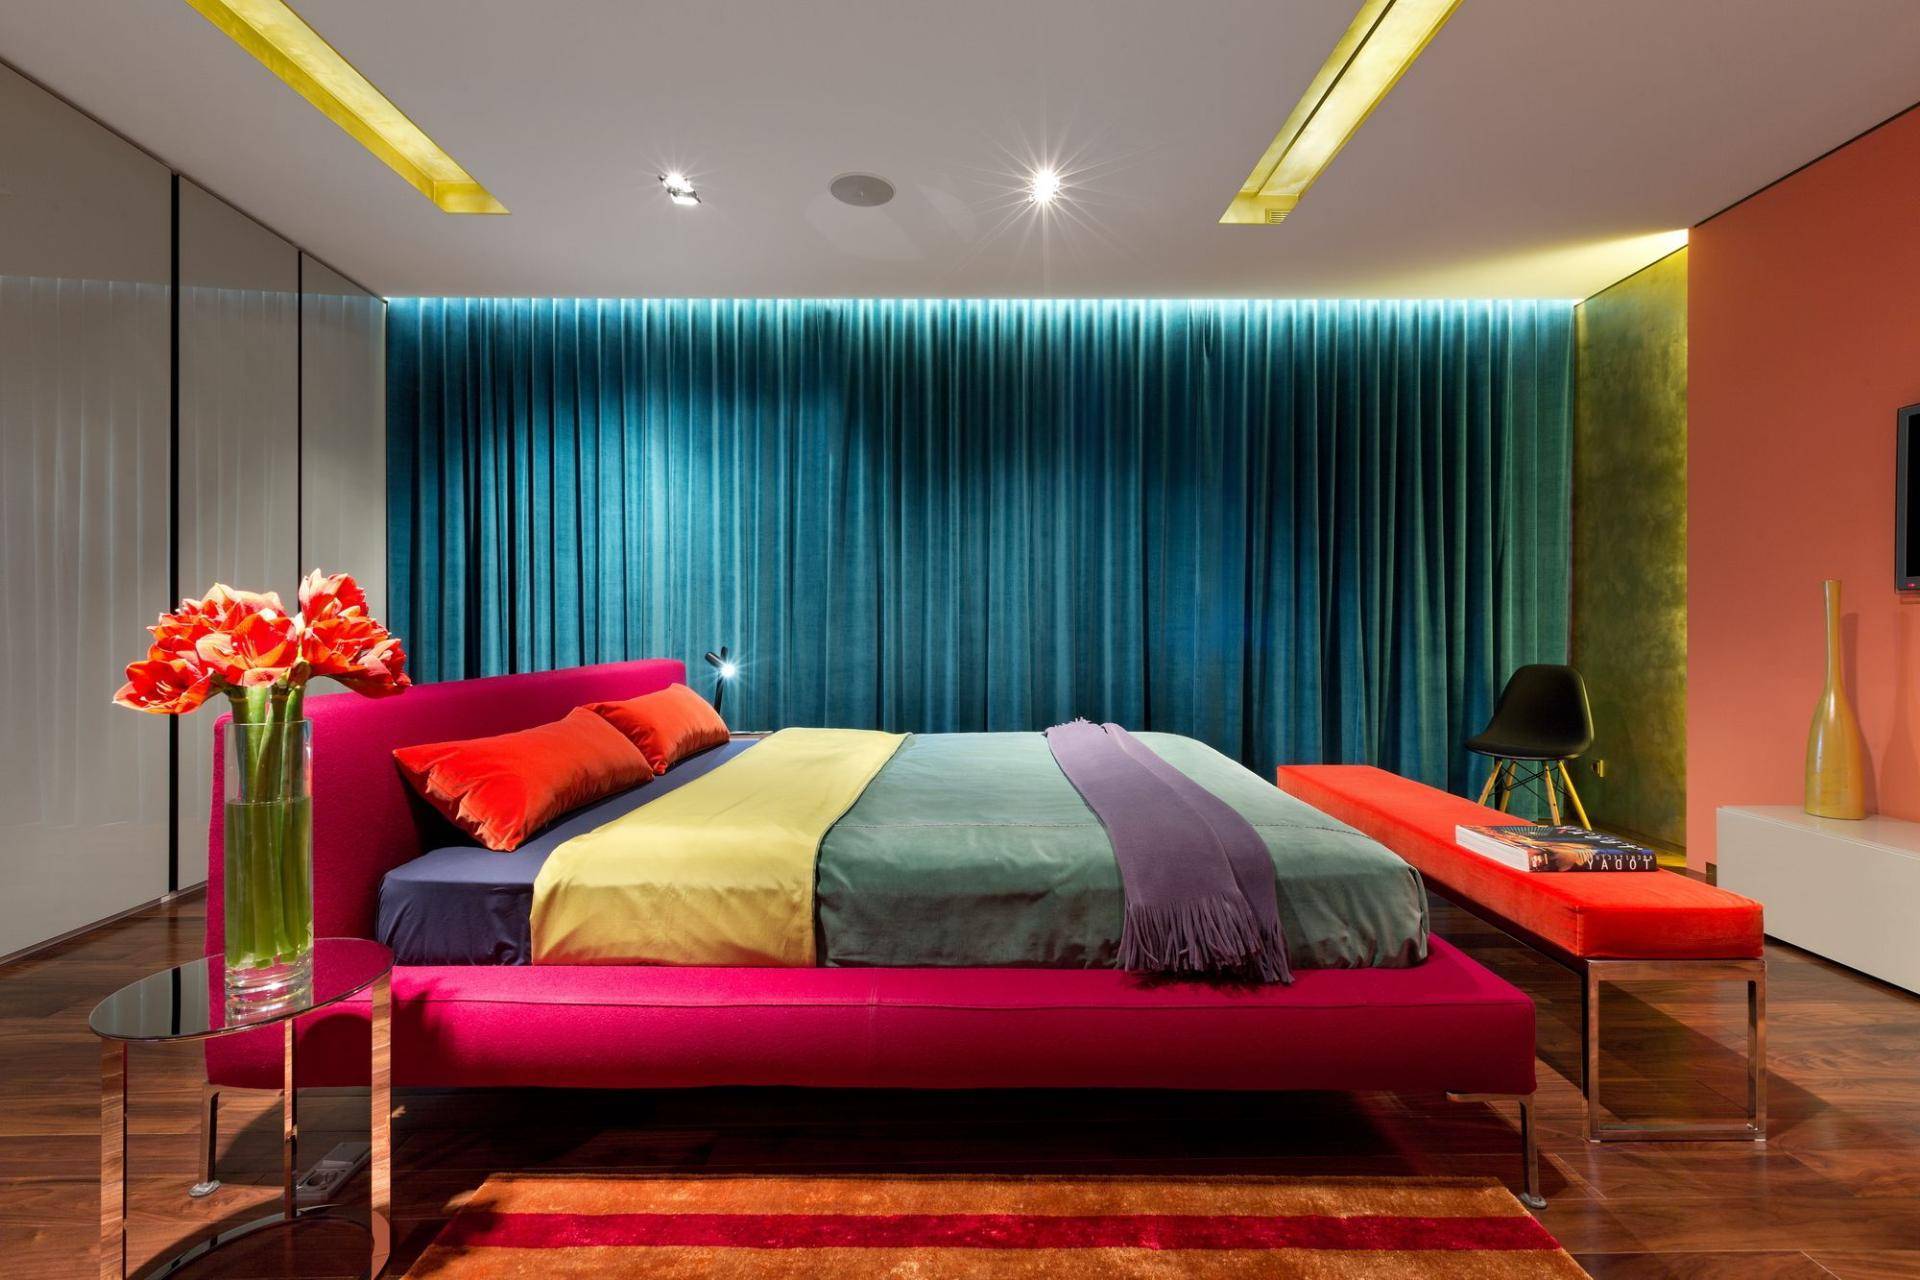 Спальня в квартире студии: актуальные идеи планировки и зонирования (130 фото)варианты планировки и дизайна